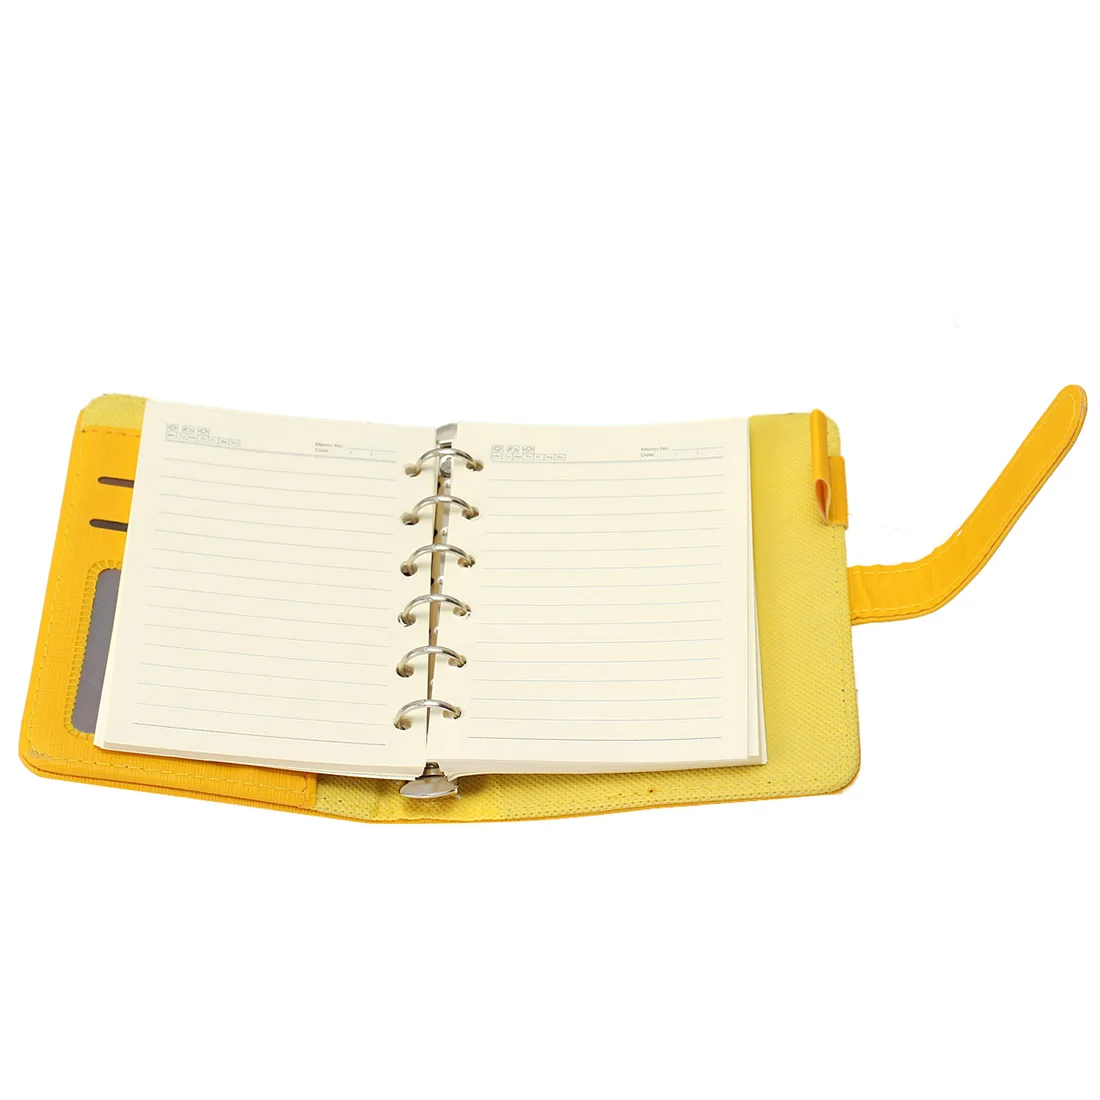 Современные Дизайн A6/A7 персональный органайзер планировщик PU кожаная обложка дневника Тетрадь школьные канцелярские принадлежности